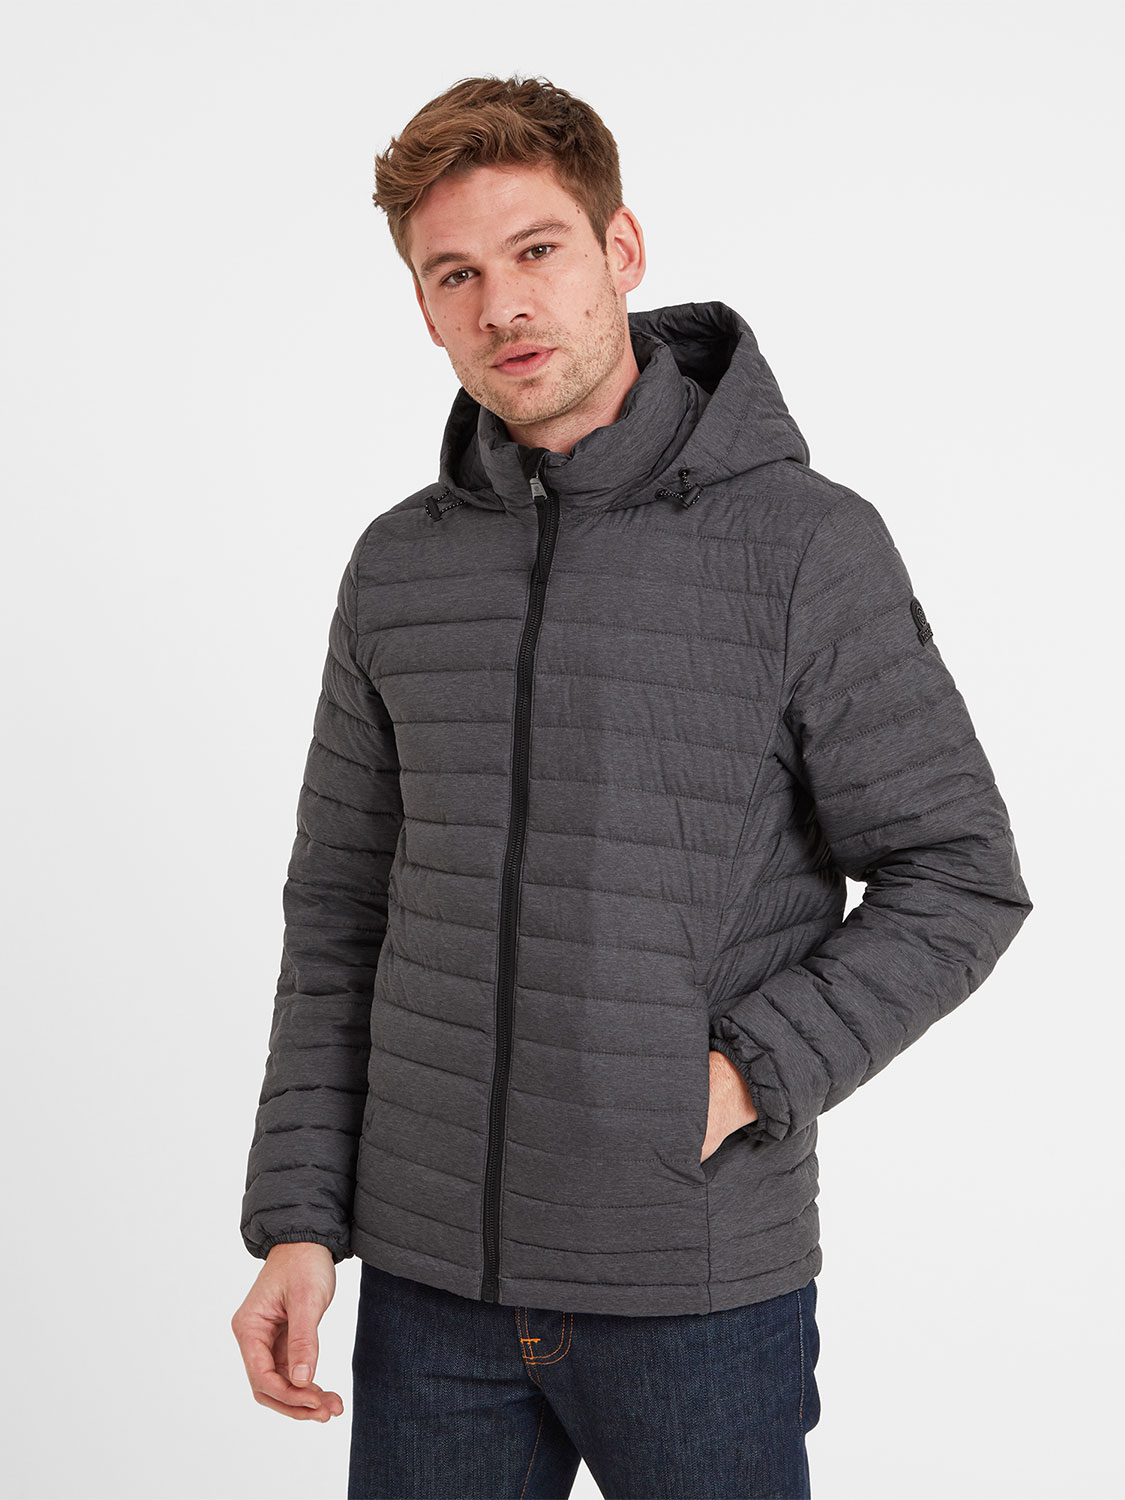 Bowburn Padded Jacket - Size: 5XL Men’s Grey Tog24